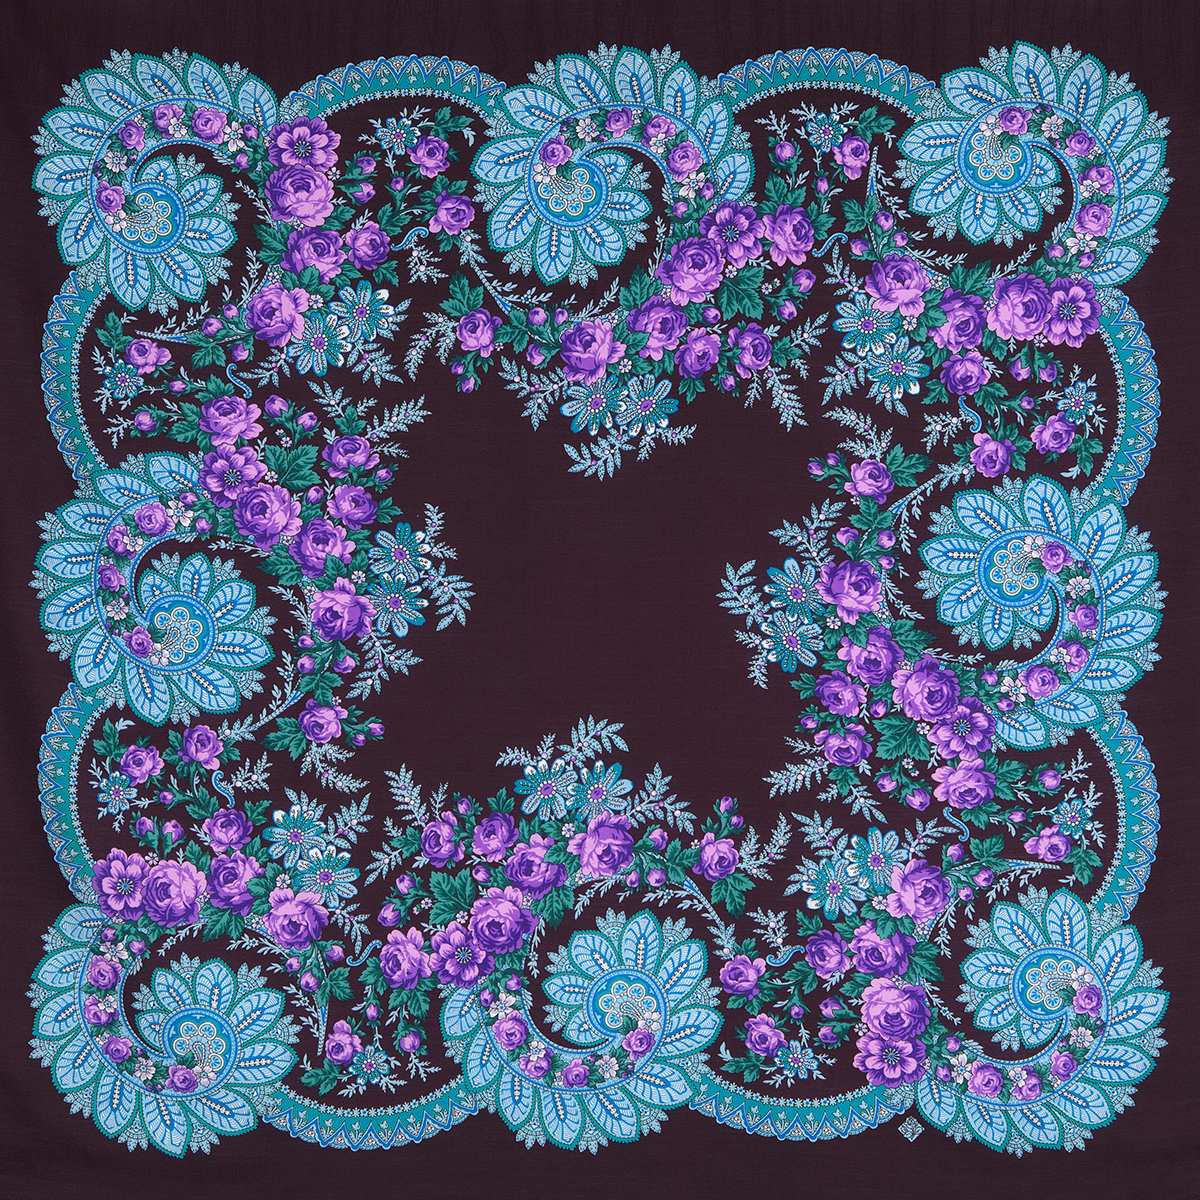 Платок женский Павловопосадский платок 1699 шоколадный/фиолетовый/бирюзовый, 110х110 см